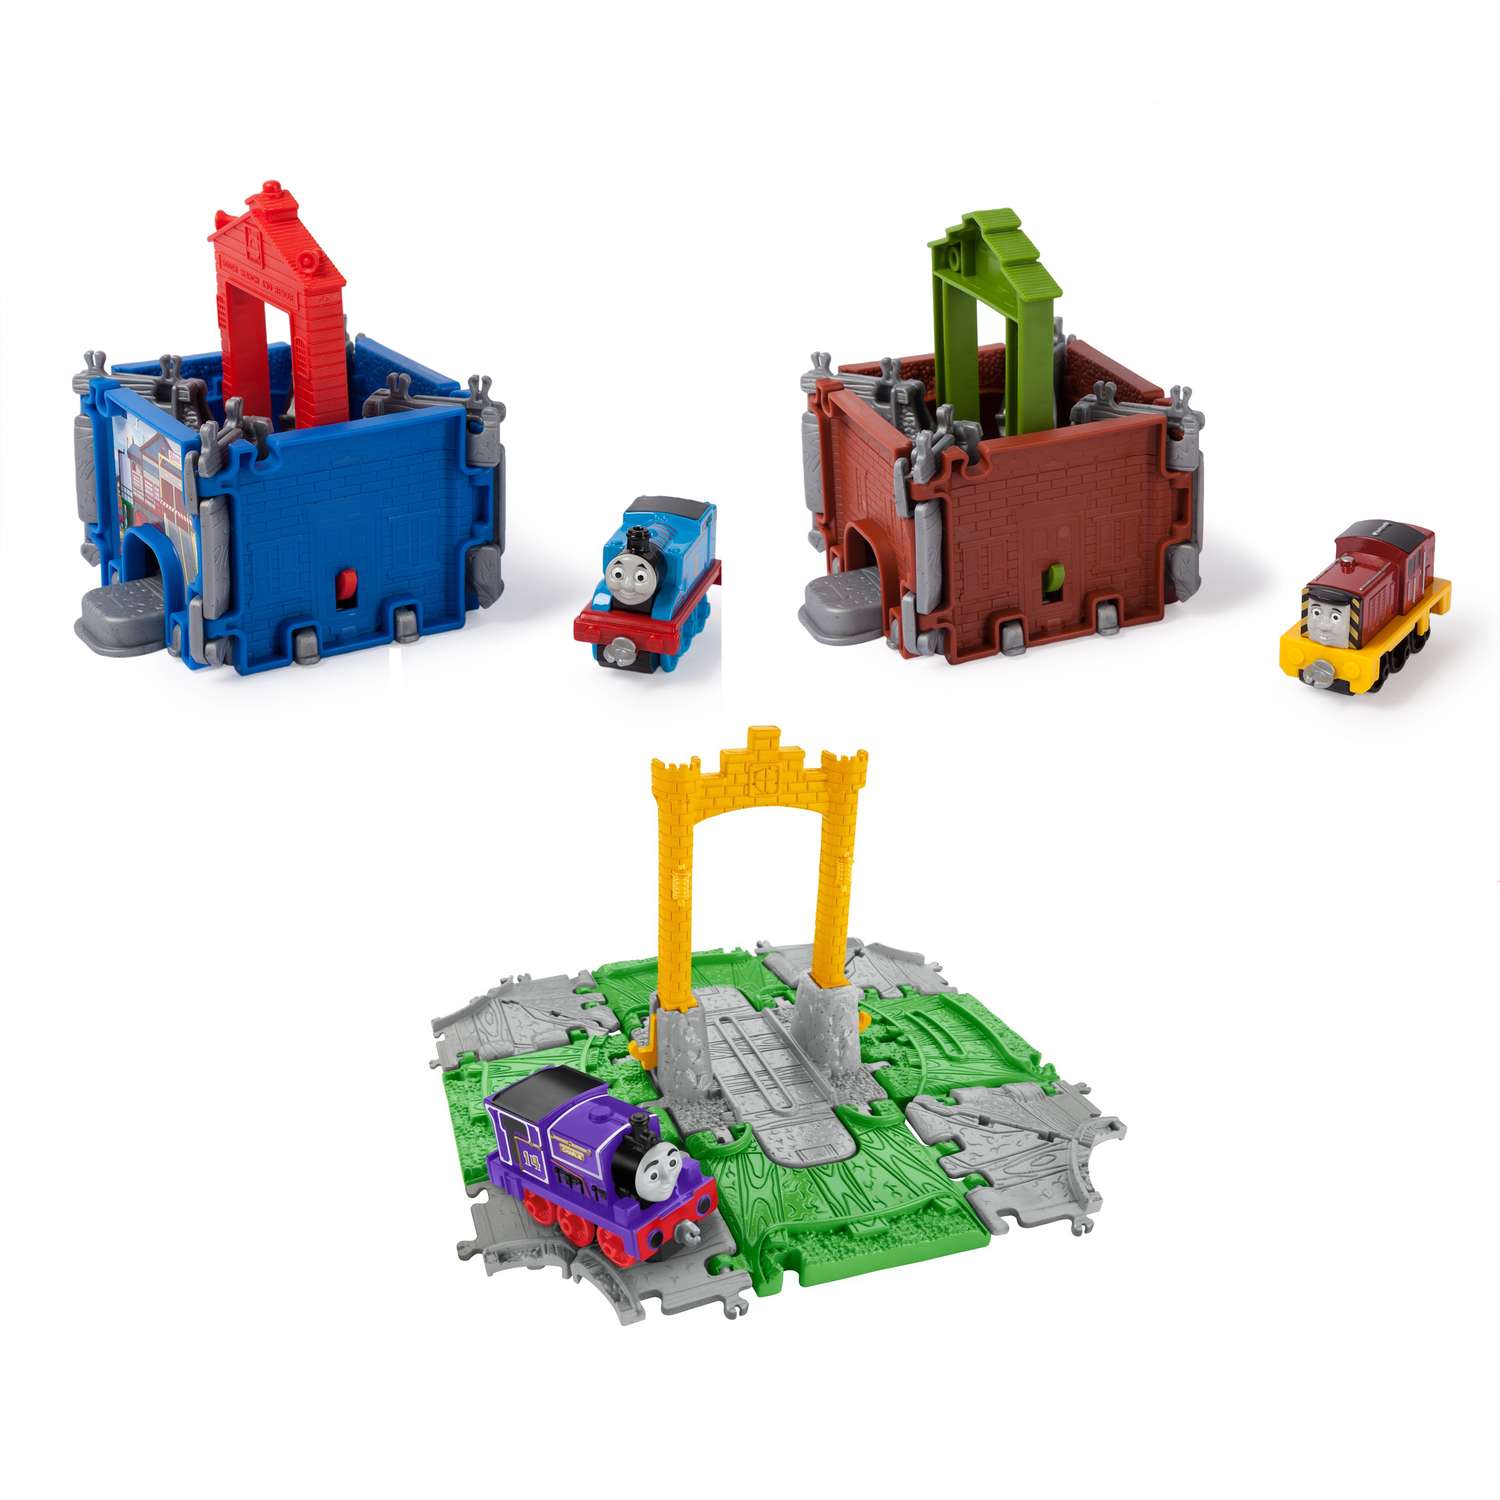 Игровой набор Thomas & Friends переносной Куб в ассортименте FBC51 - фото 1